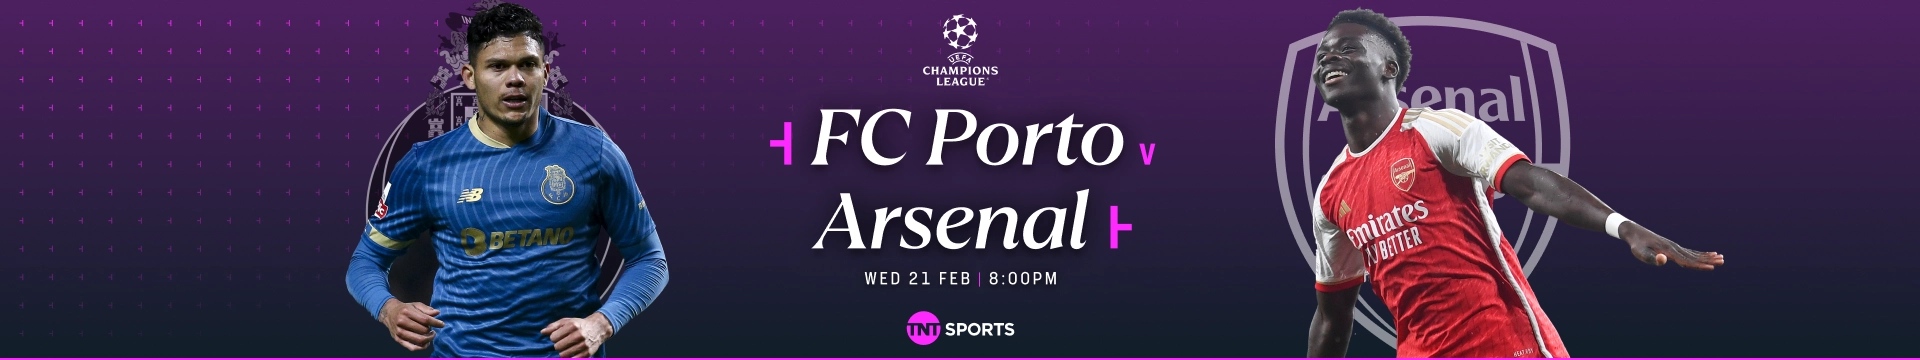 FC Porto v Arsenal - Wednesday 21 February at 8pm on TNT Sports